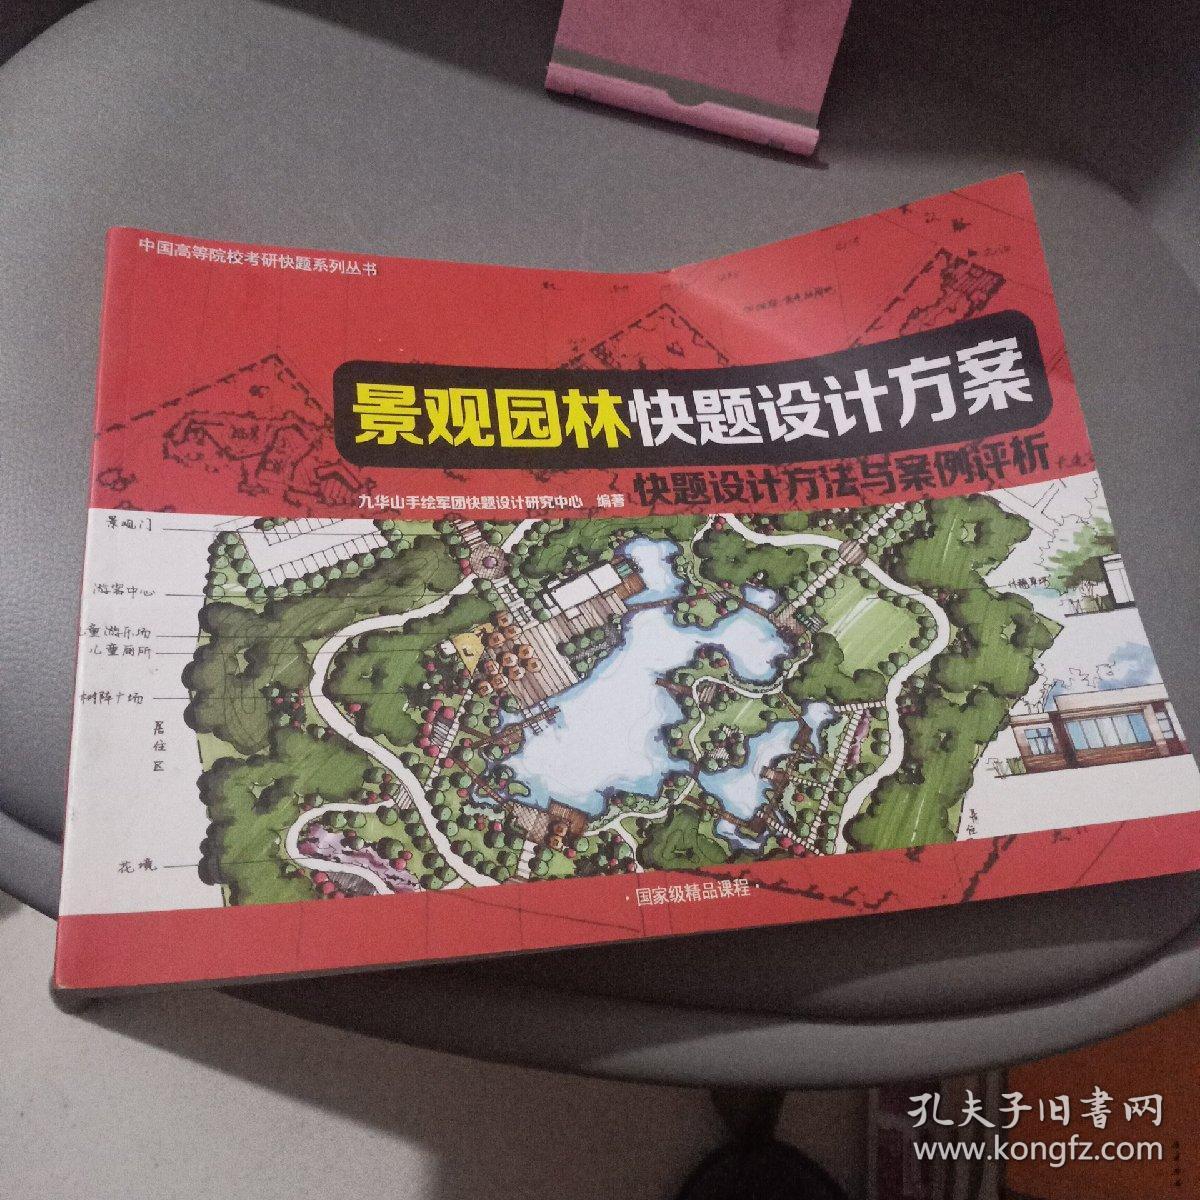 中国高等院校考研快题系列丛书 景观园林快题设计方案 快题设计方法与案例评析